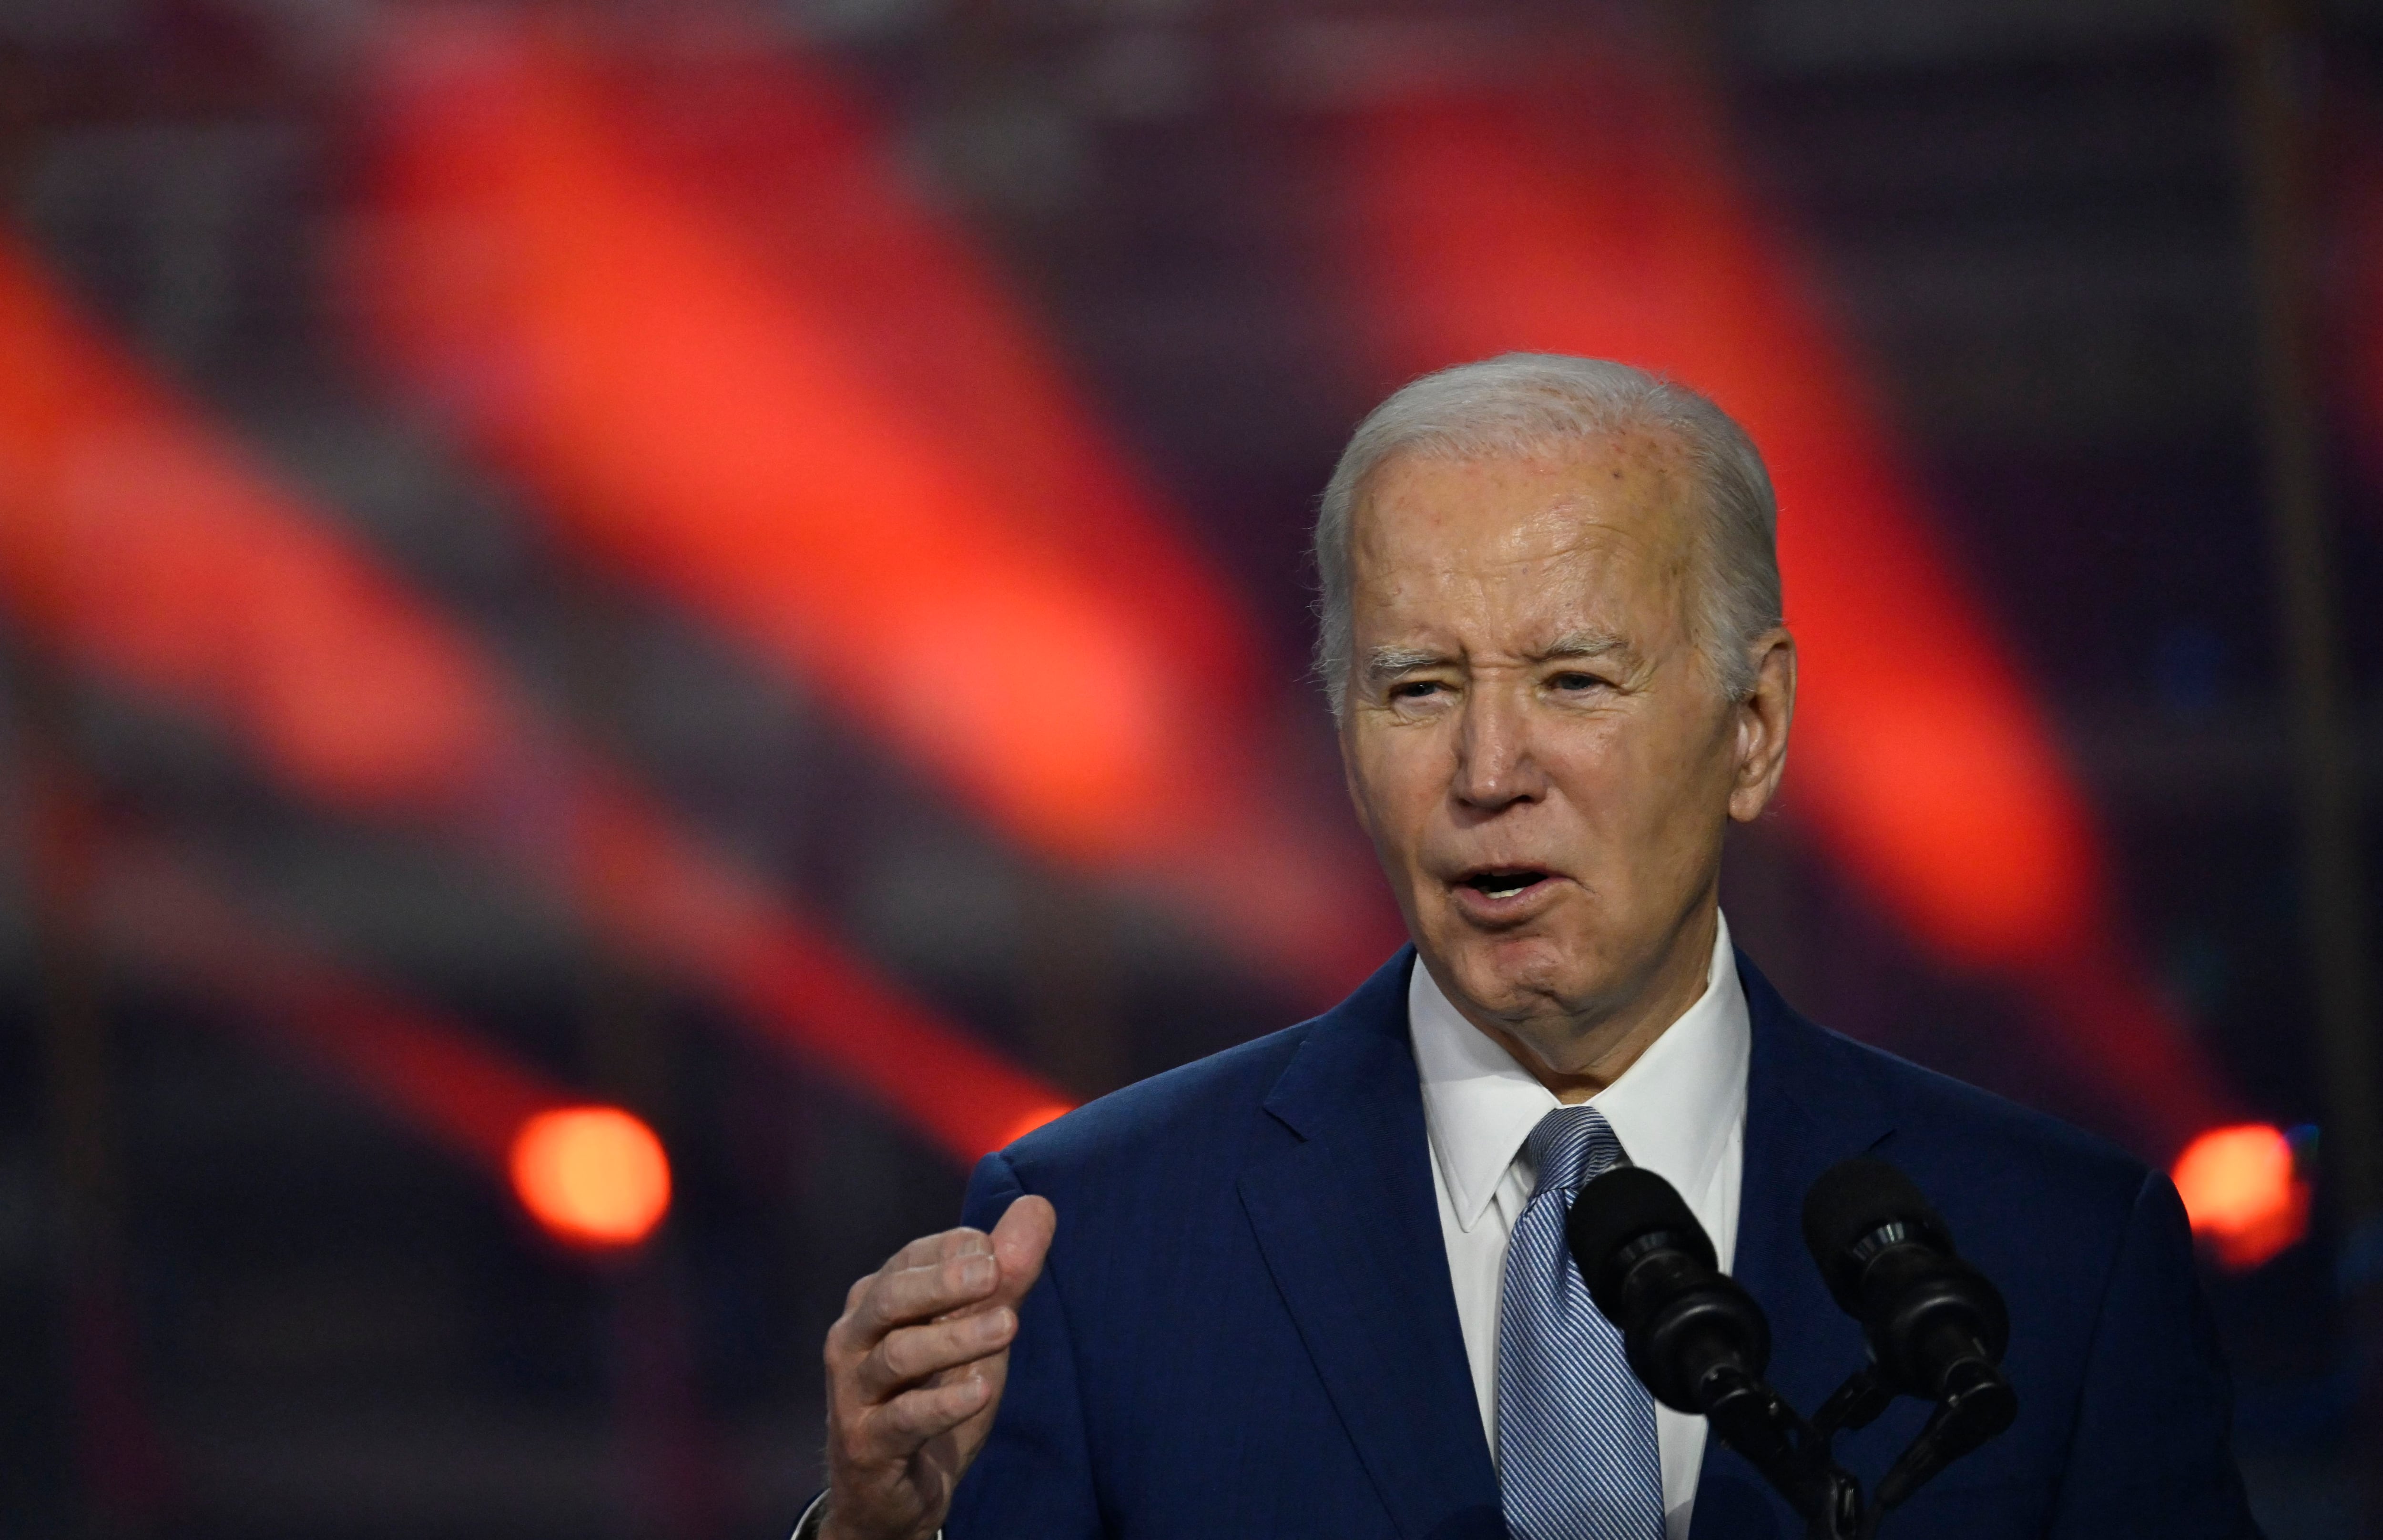 Joe Biden, presidente de los Estados Unidos, es tajante en su apoyo a Israel en medio del conflicto en Oriente Medio.